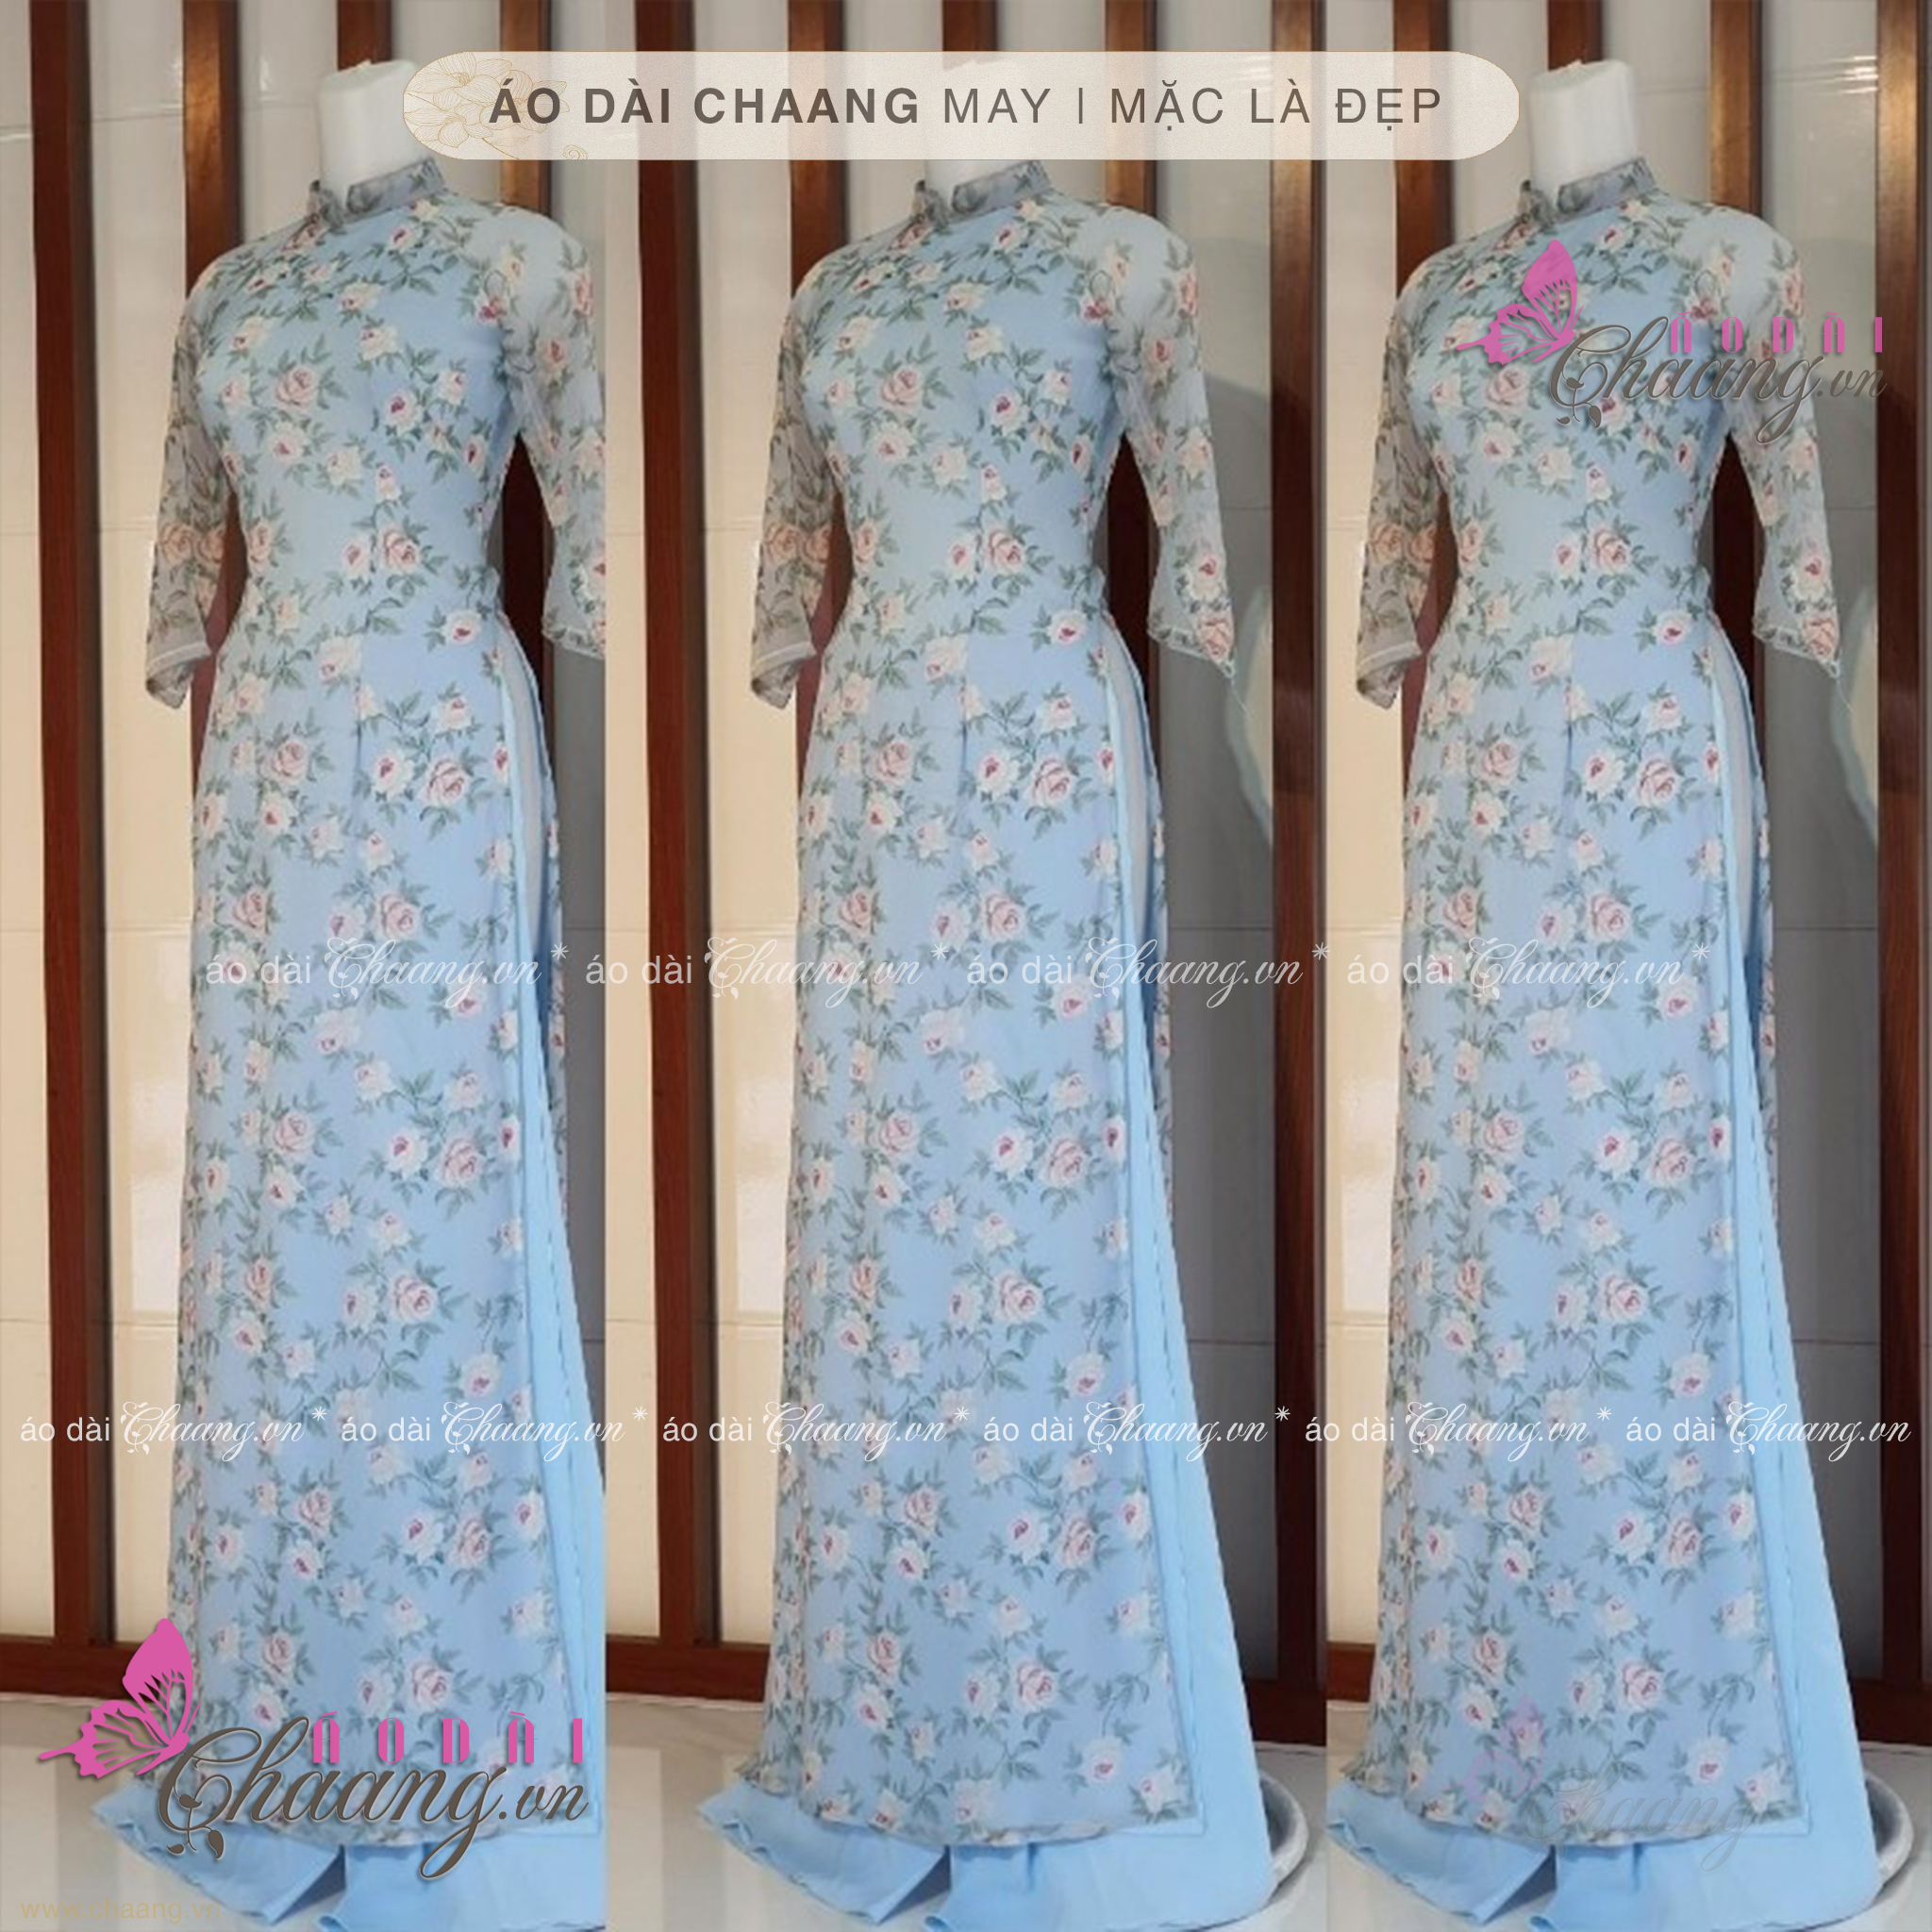 Áo dài hoa nhí - Chaang May sẵn vải áo dài truyền thống 4 tà, vải lụa kết hợp to hoa nhí xanh đẹp